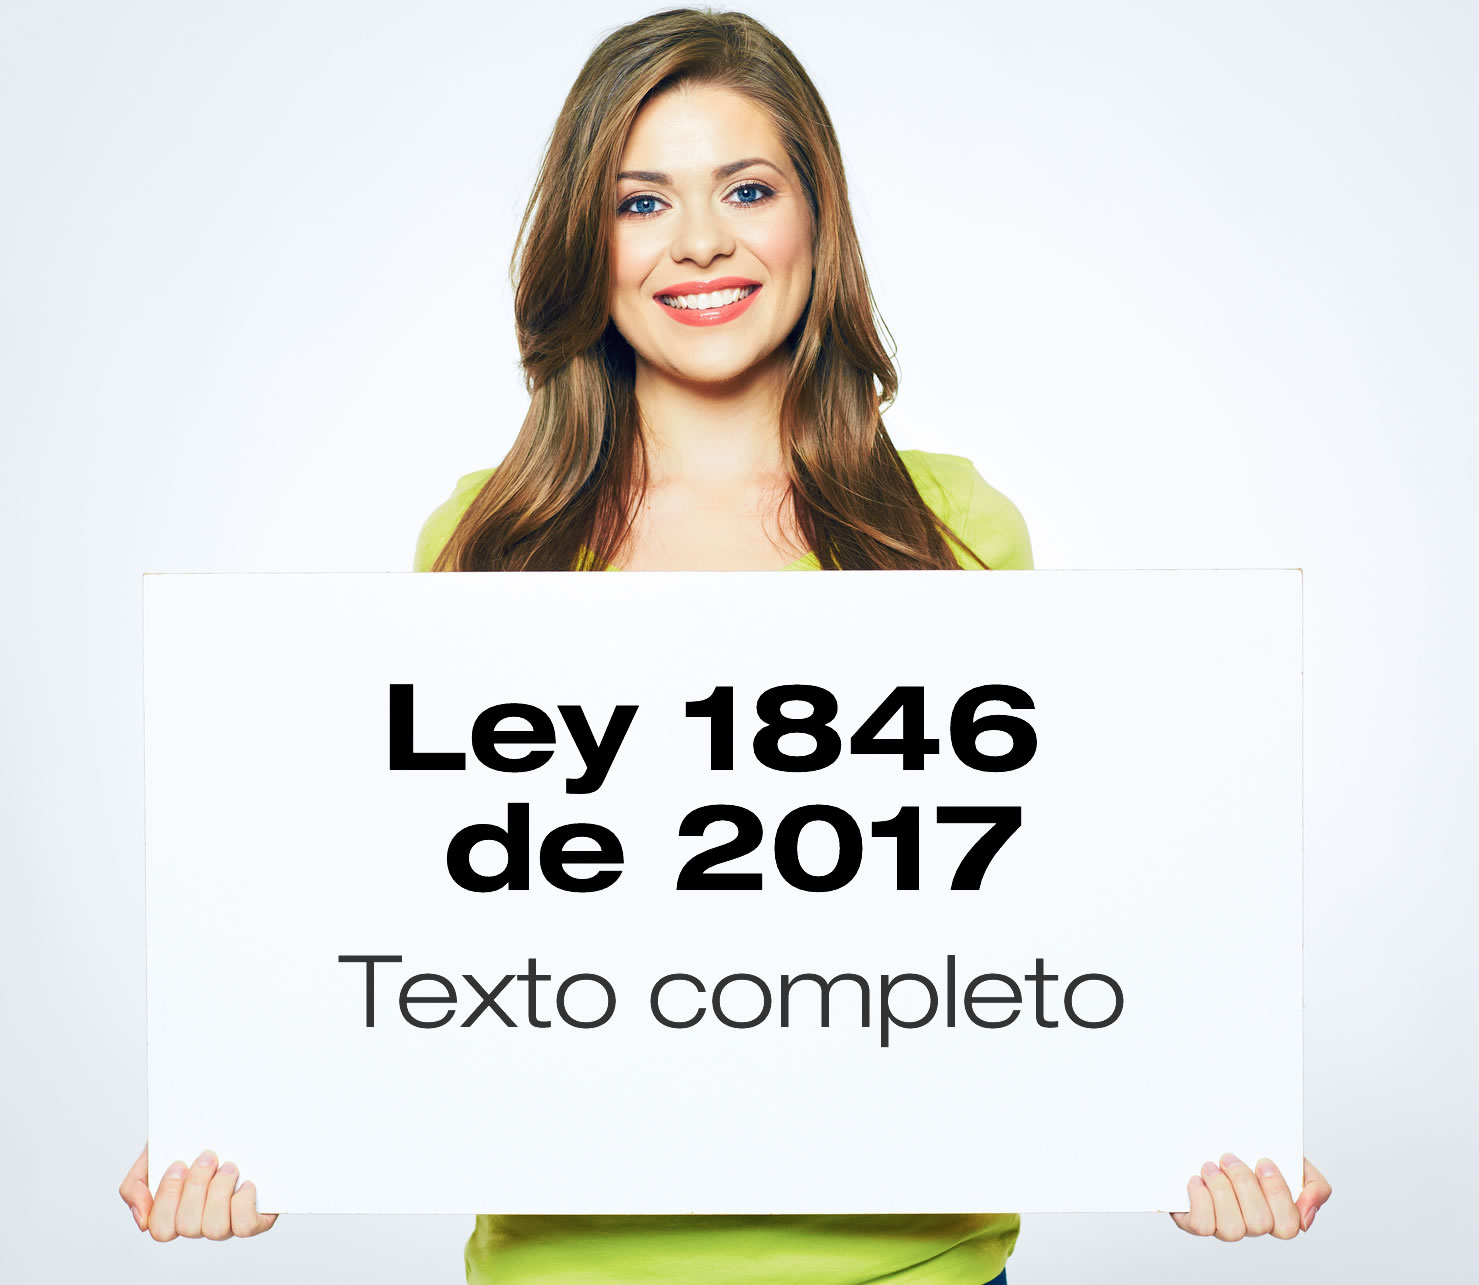 Ley 1846 de 2017